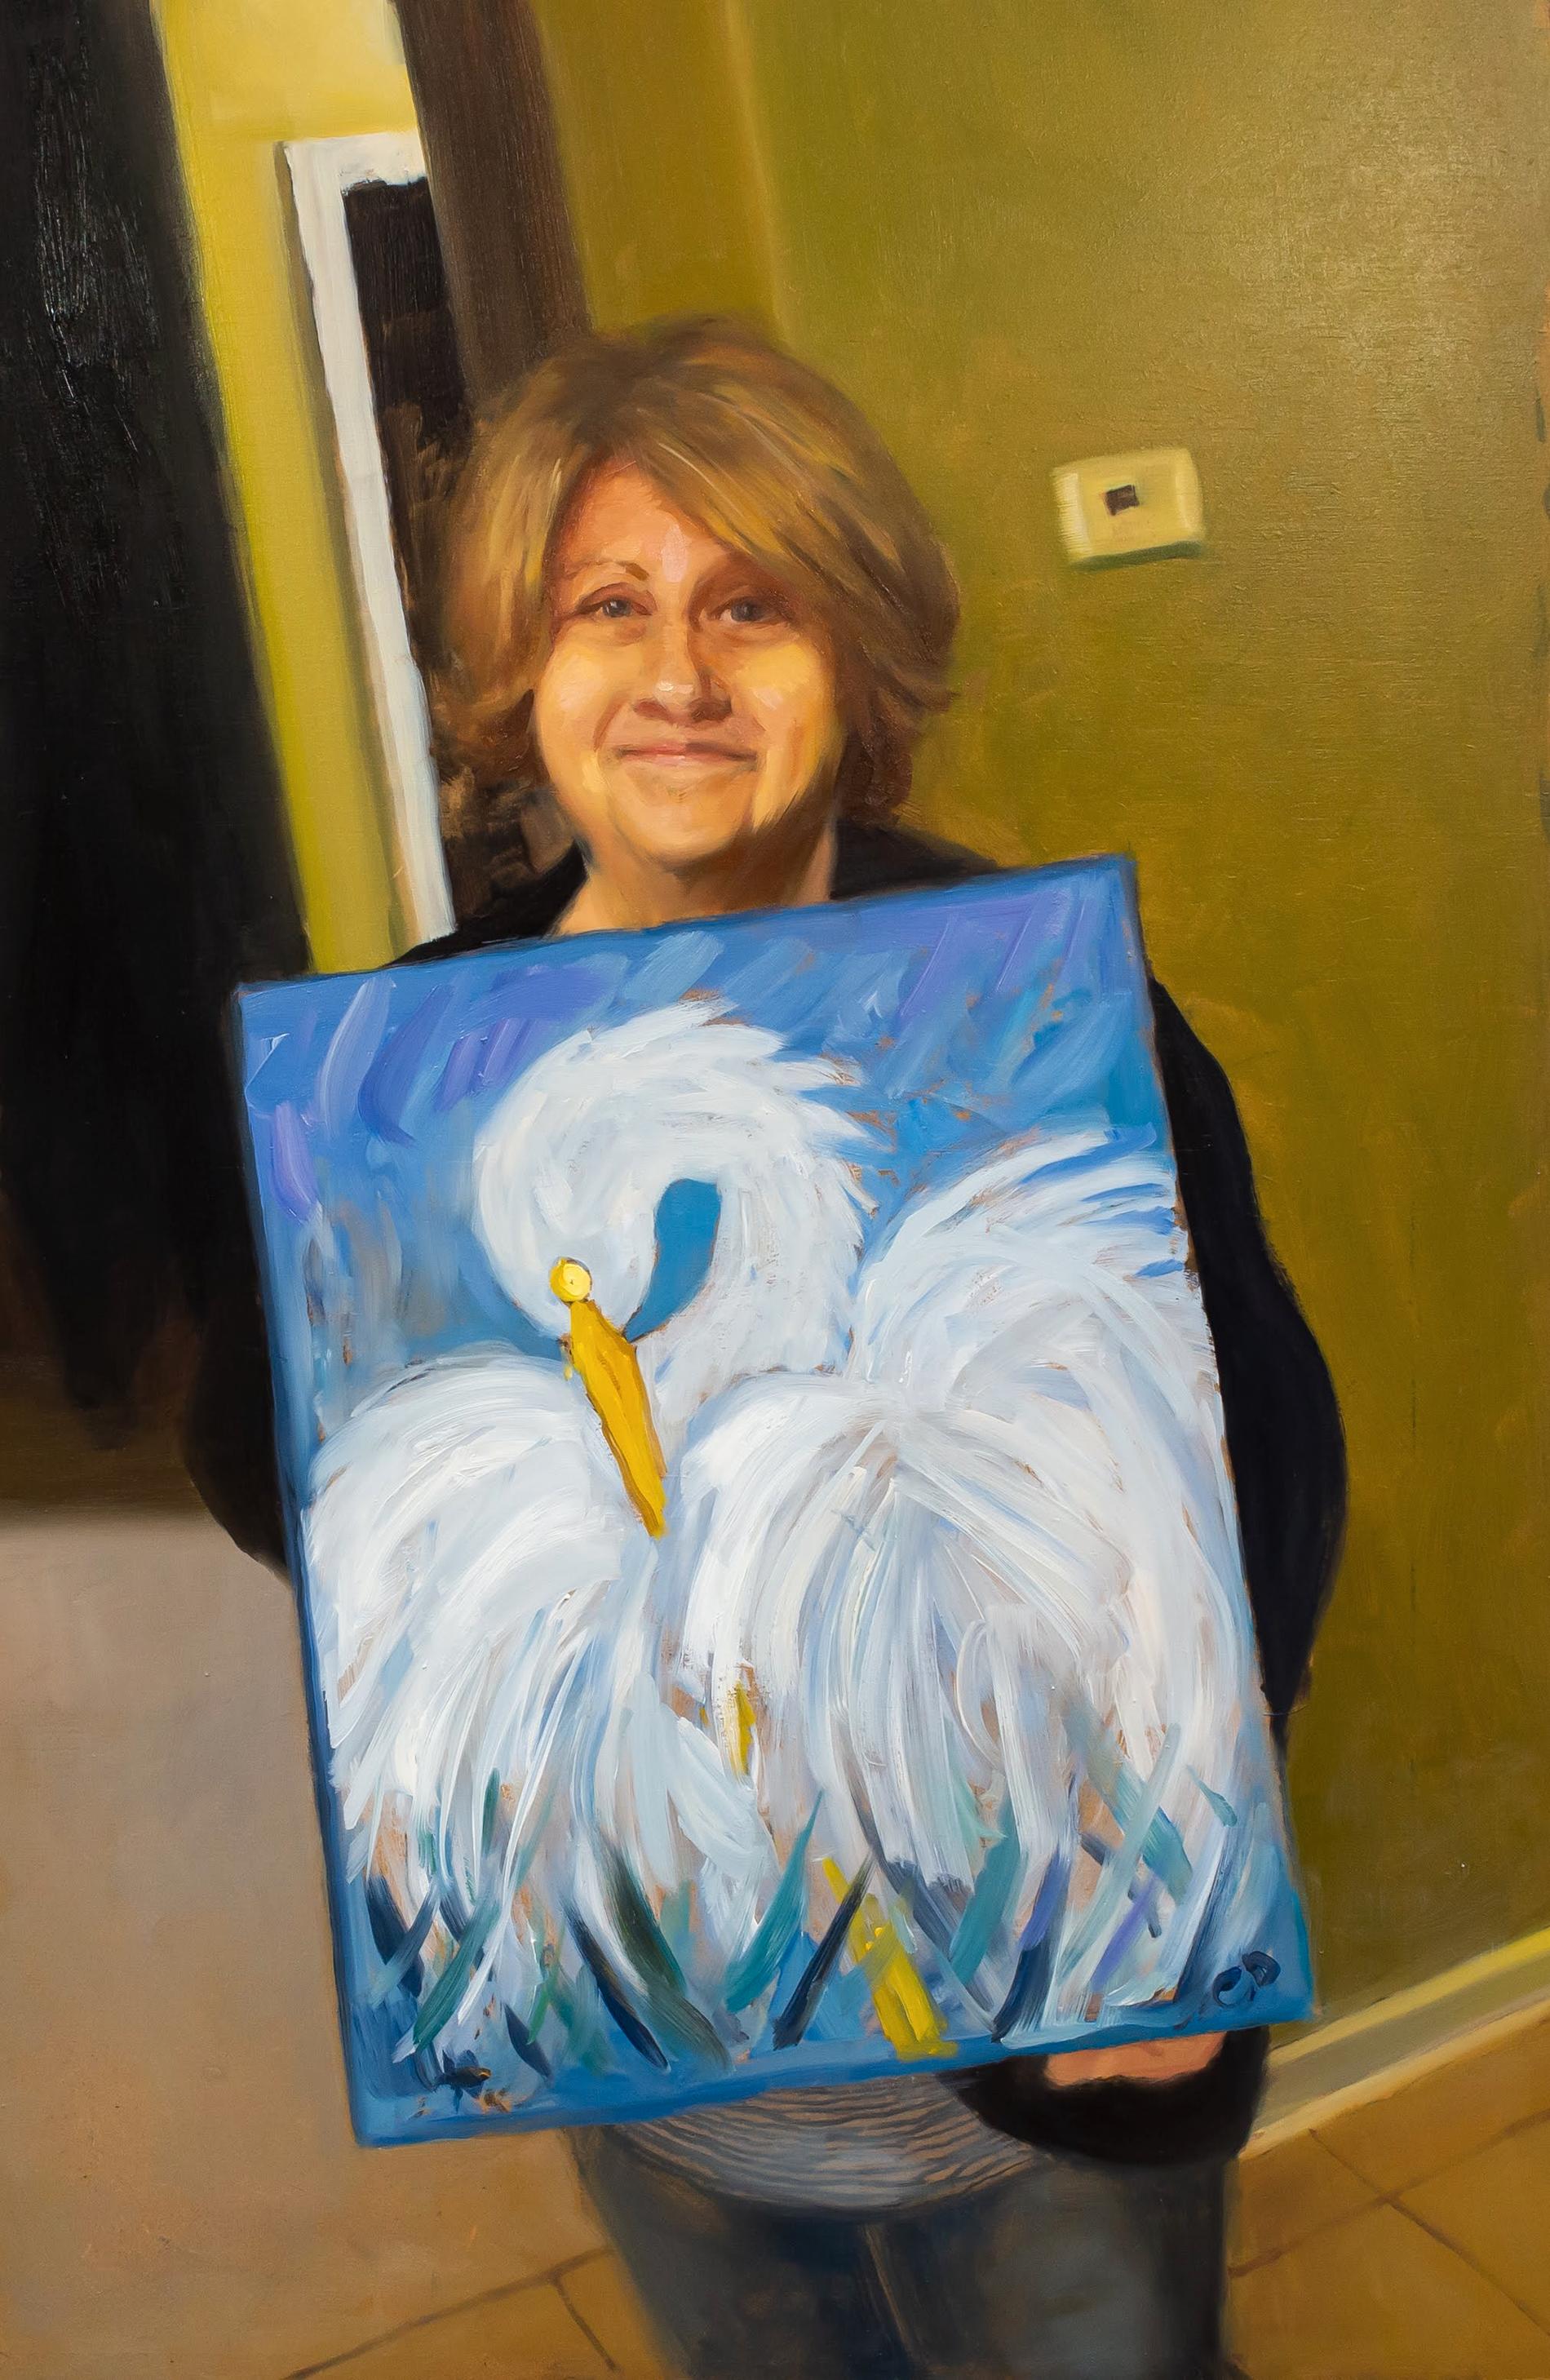 Kristoffer målade av fotot på mamman och hennes målning.